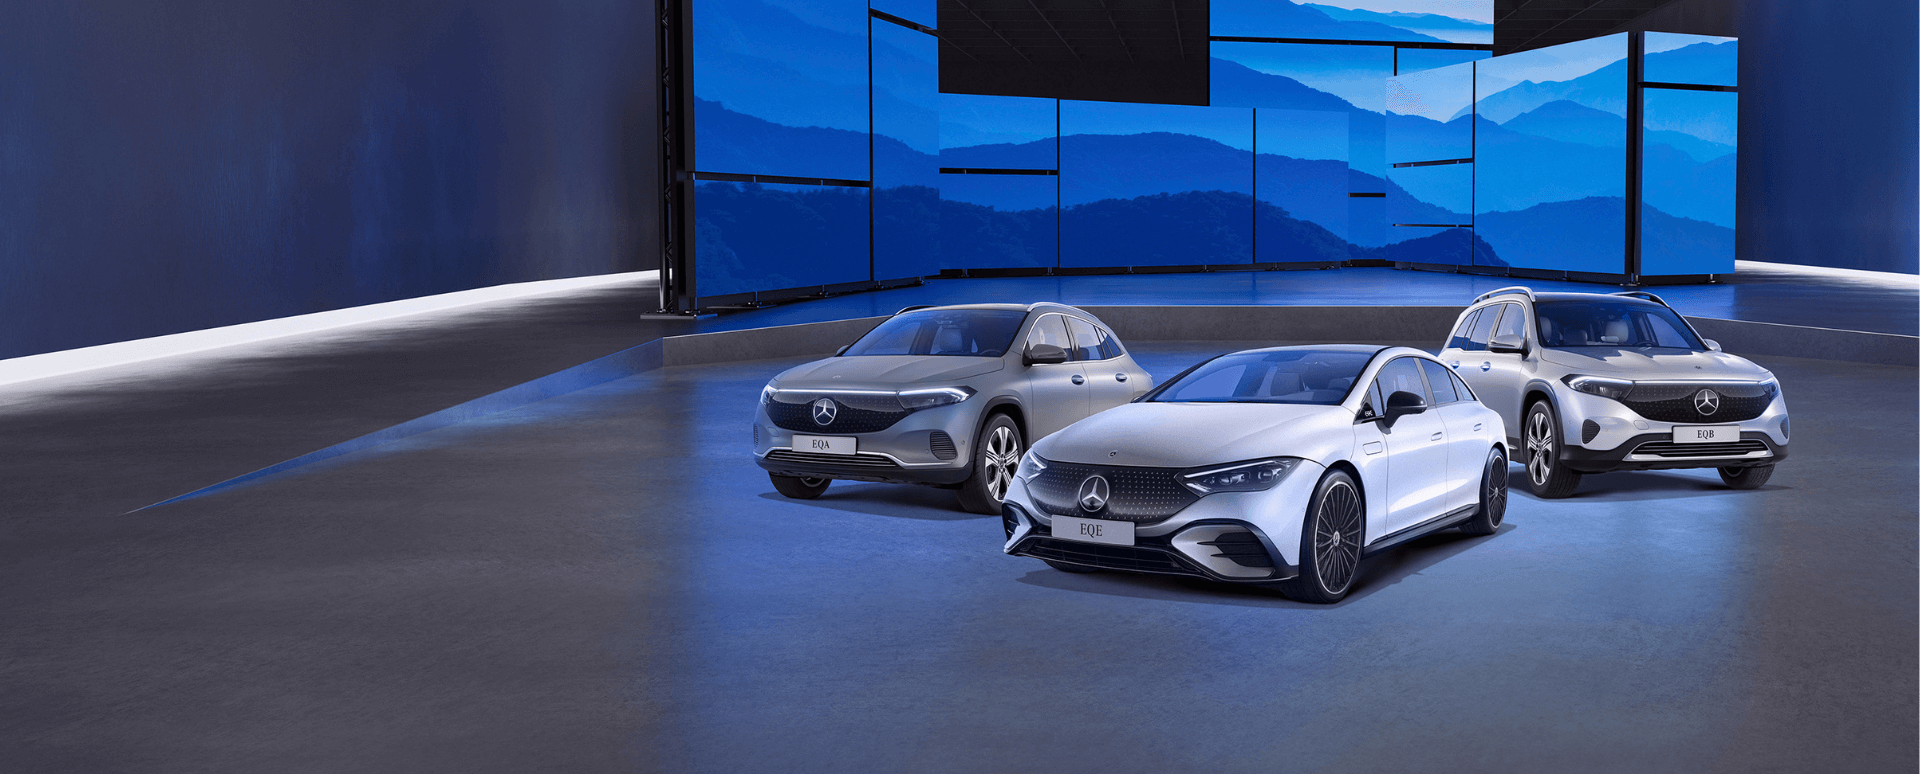 Mercedes-Benz Fleet and Business Offers